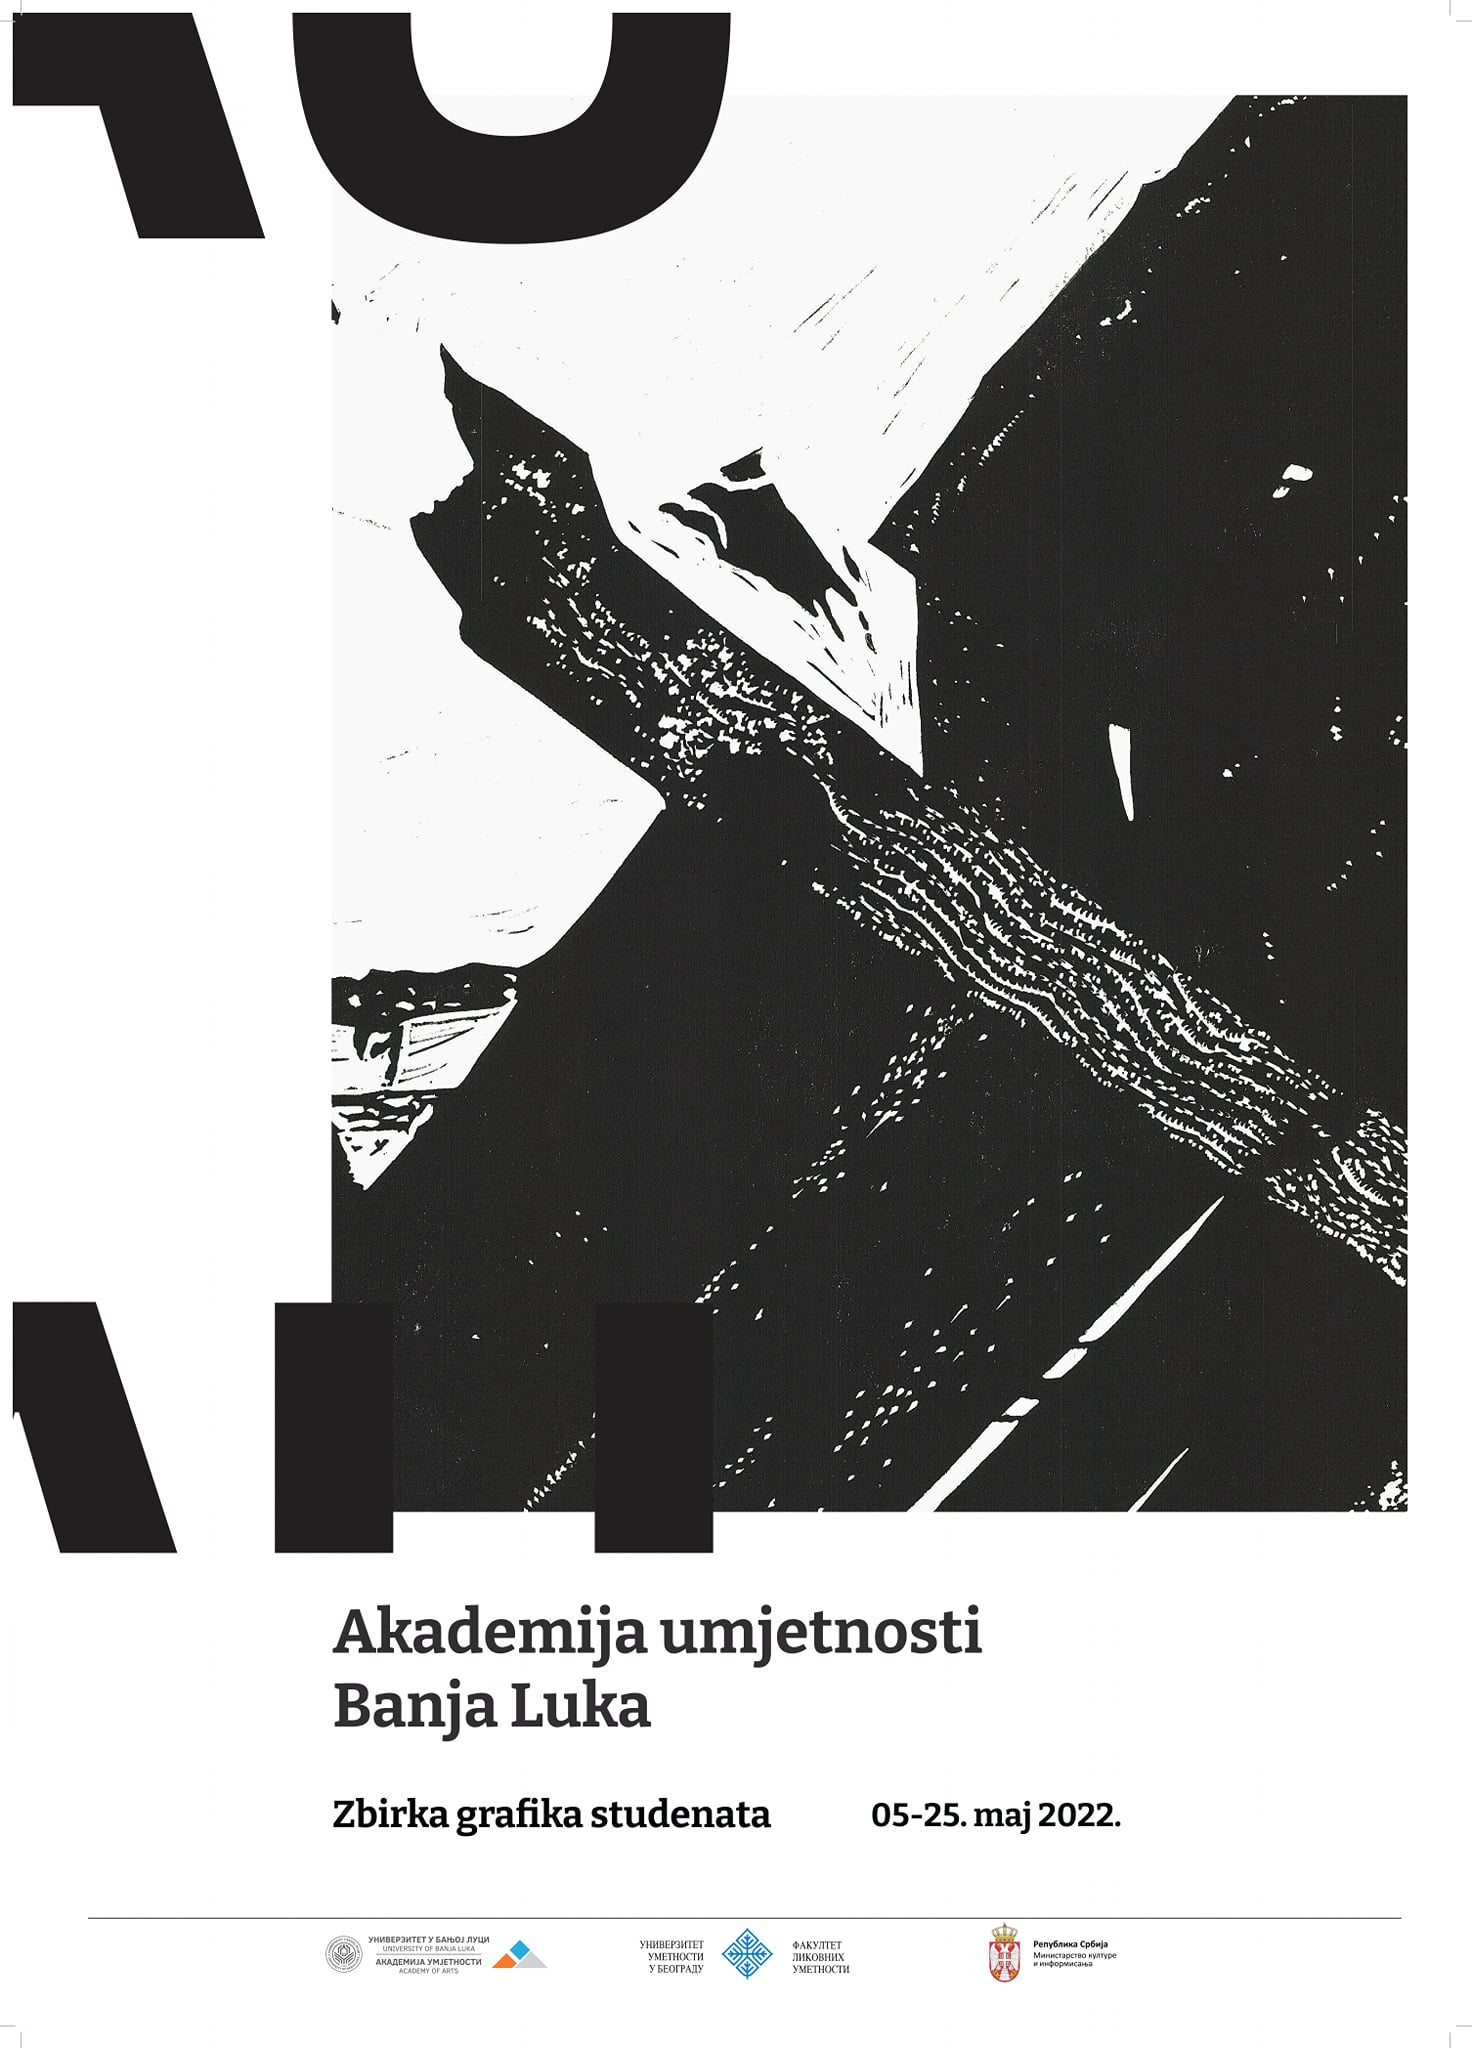 Изложба збирке&nbsp;графика студената Академије умјетности УНИБЛ отвара се сутра у Београду